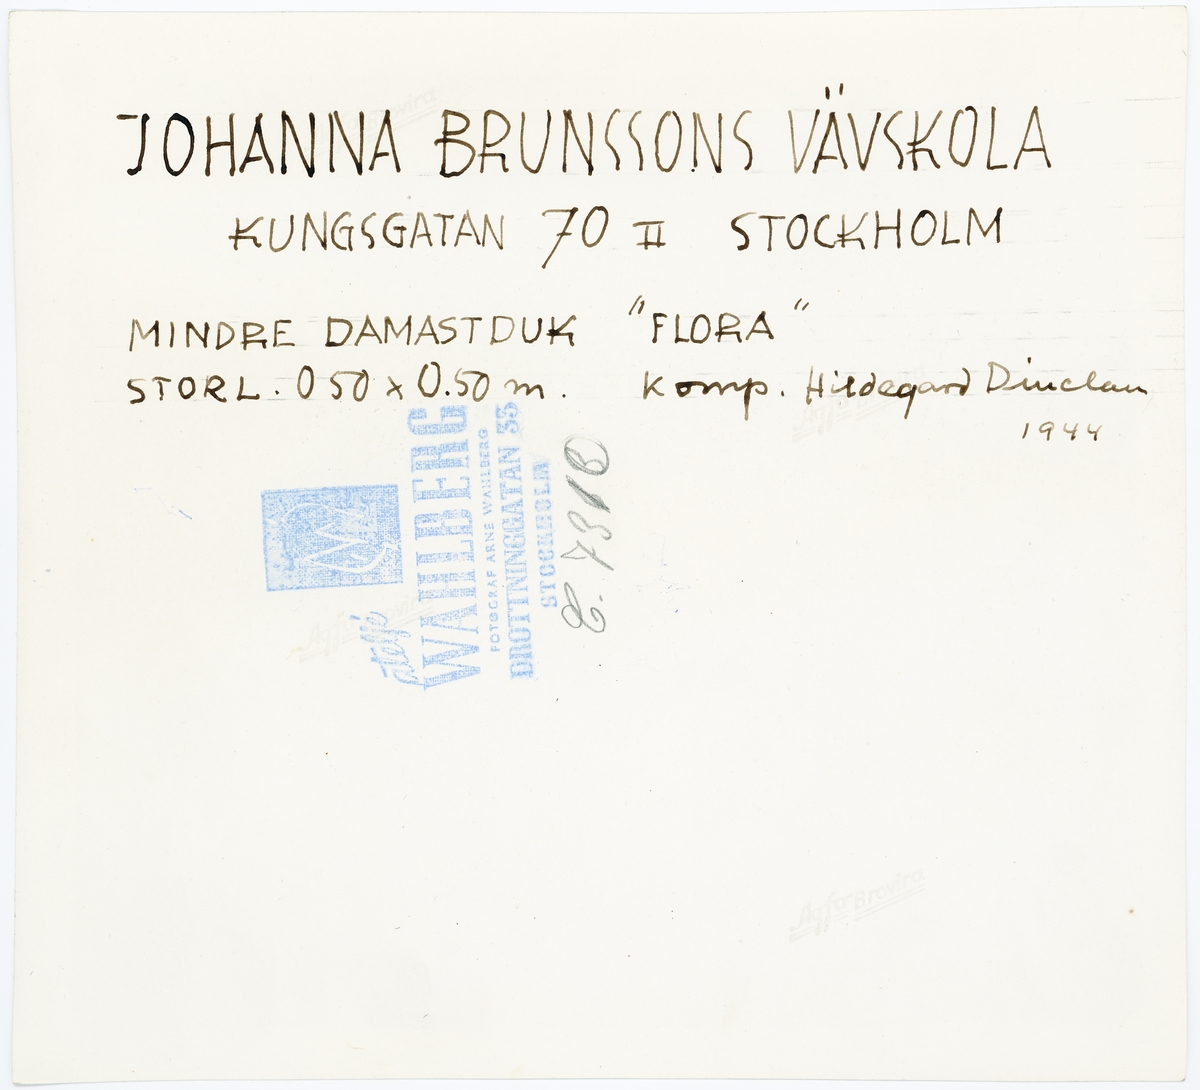 Stockholm. Johanna Brunssons vävskola